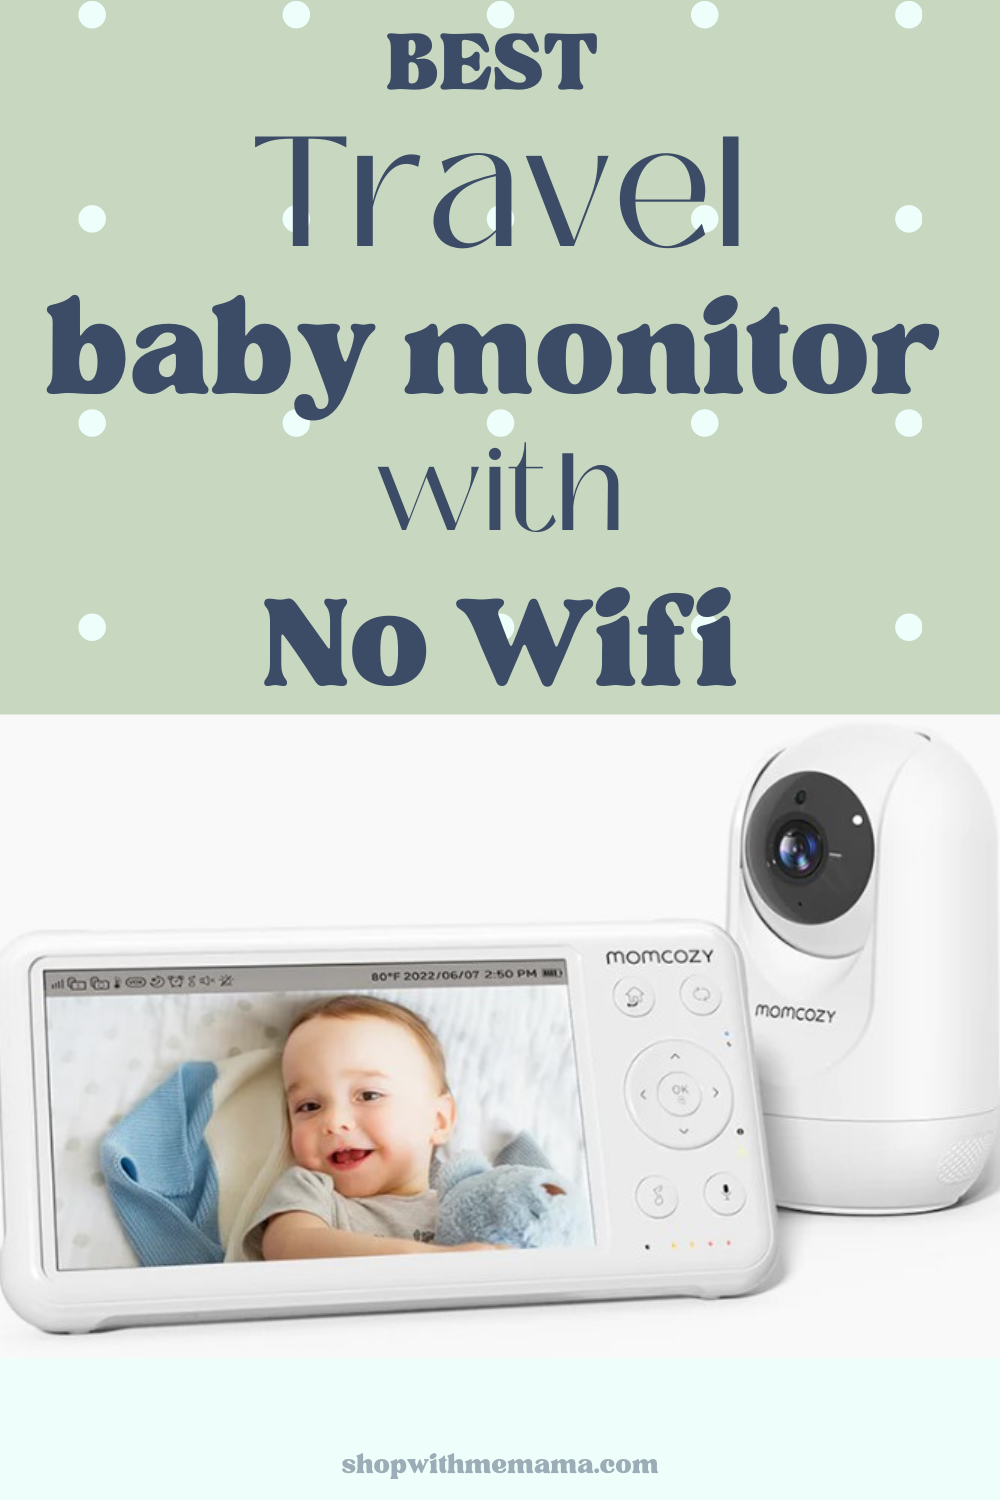 Momcozy Video Baby Monitor - White